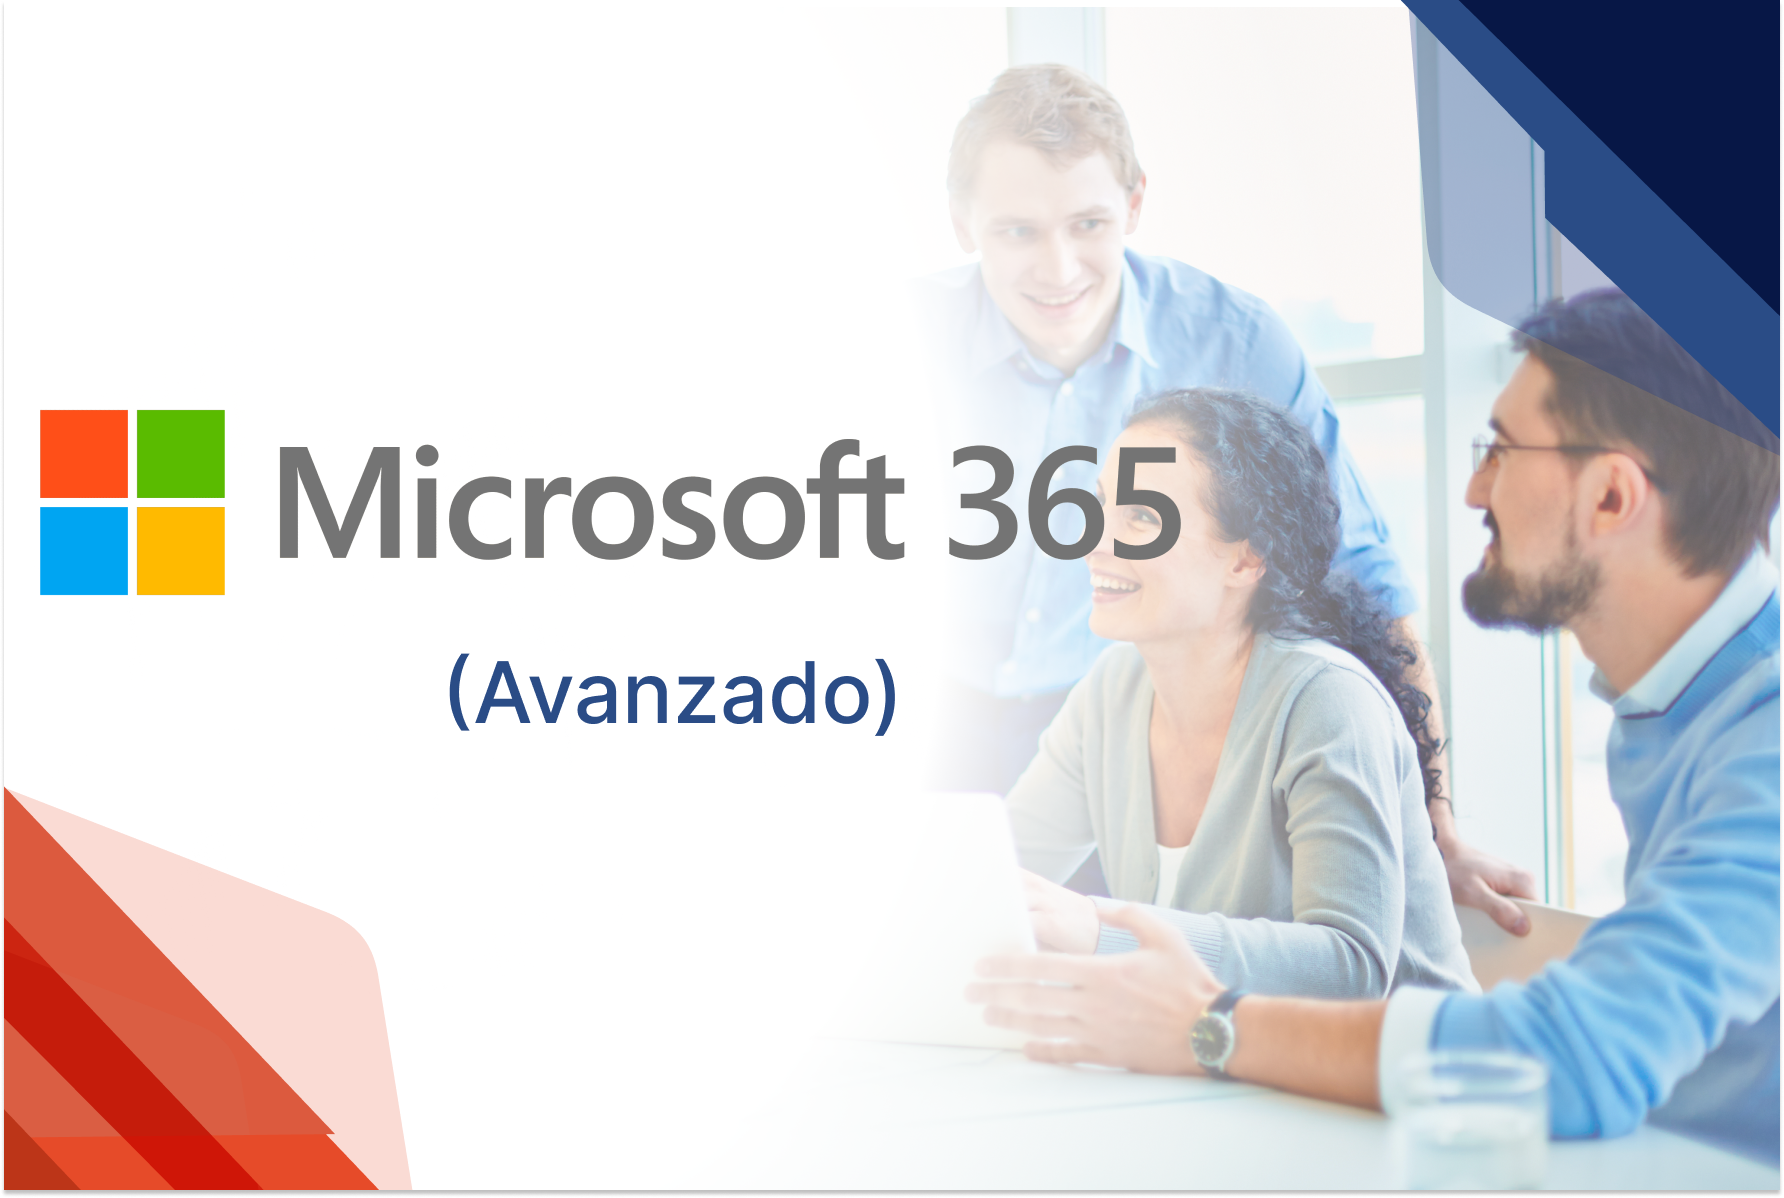 Uso y aprovechamiento de Office 365 en la empresa (Avanzado)